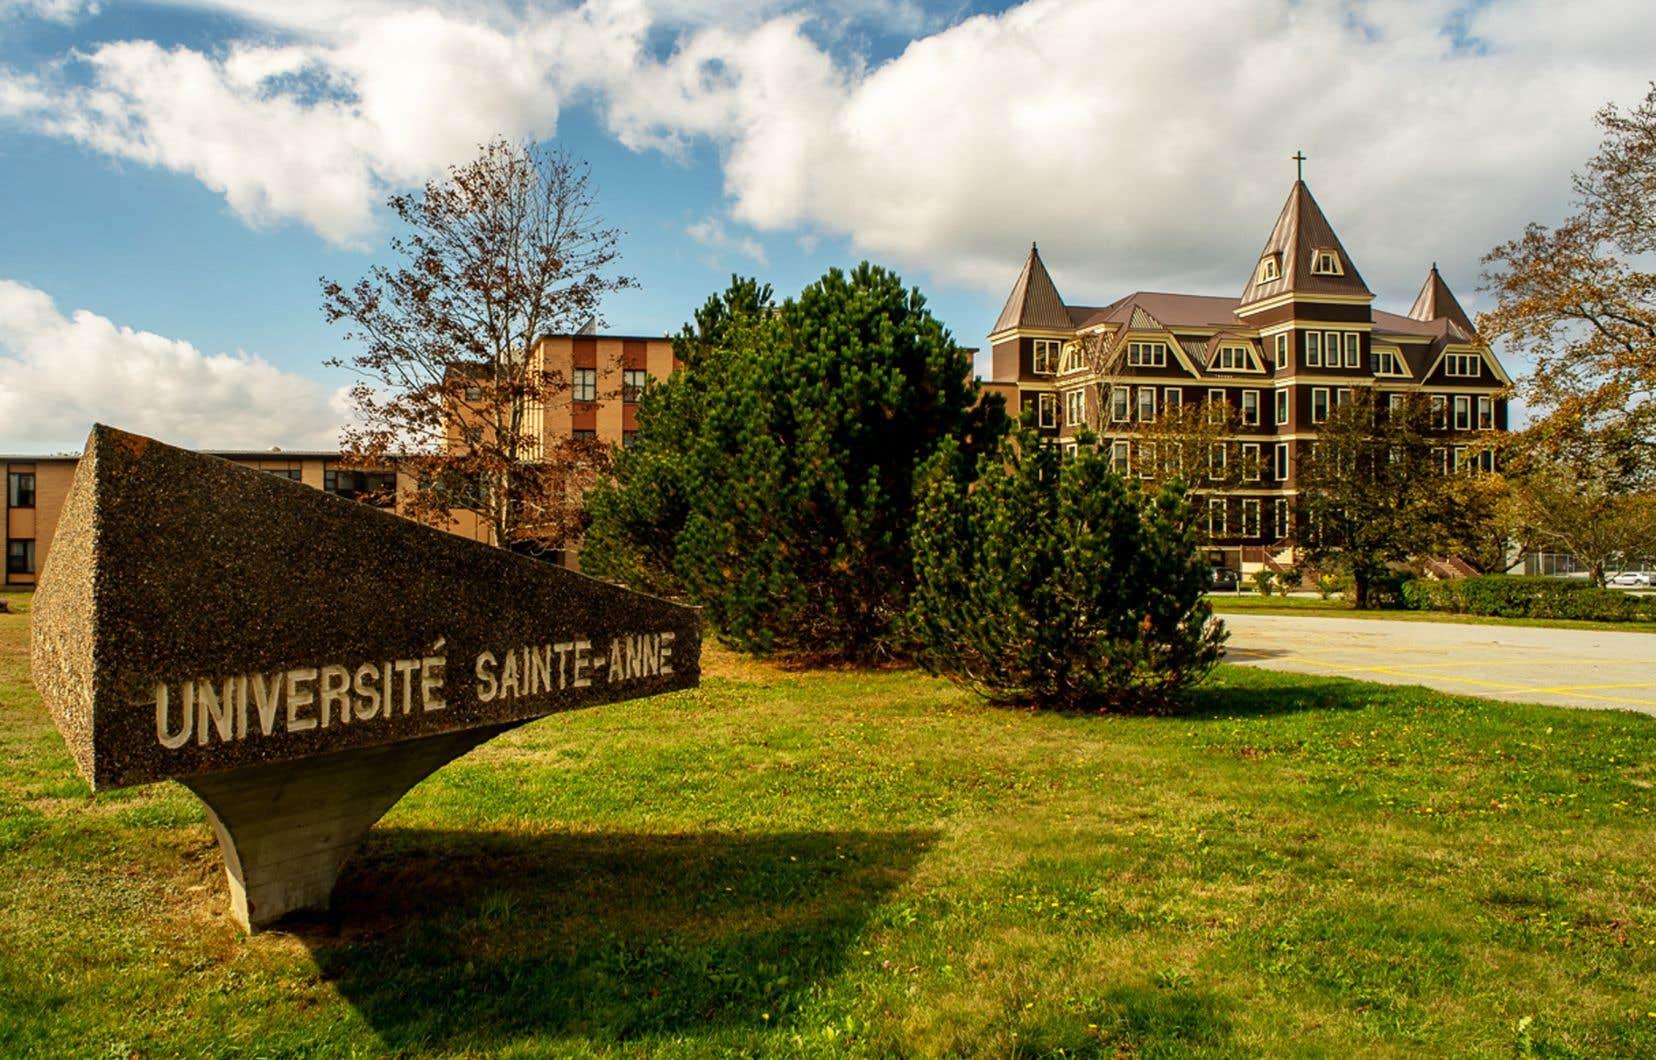 Université Sainte-Anne